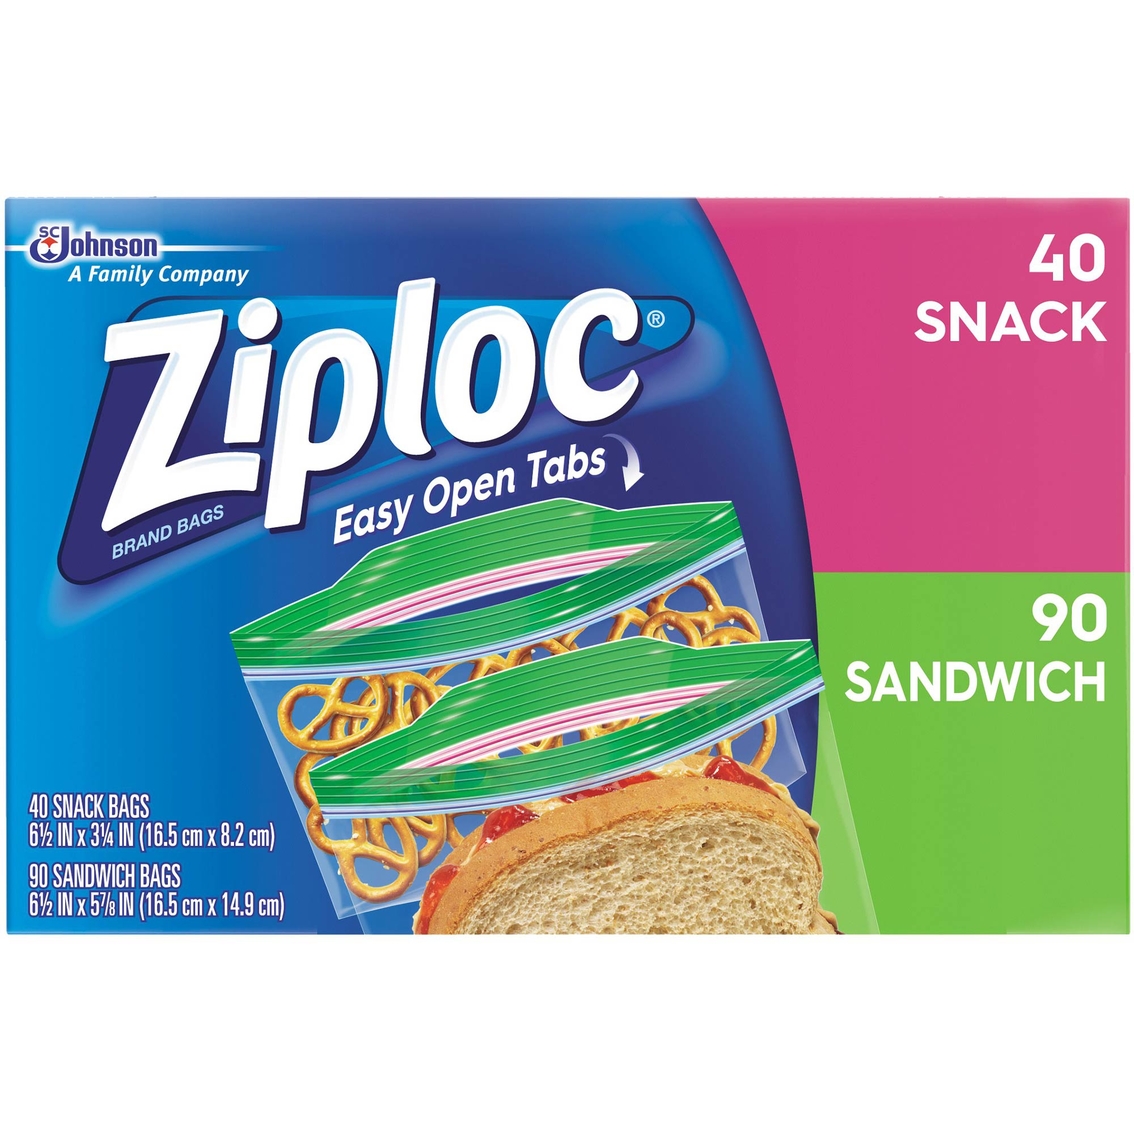 Sandwich Bag, 90-Count